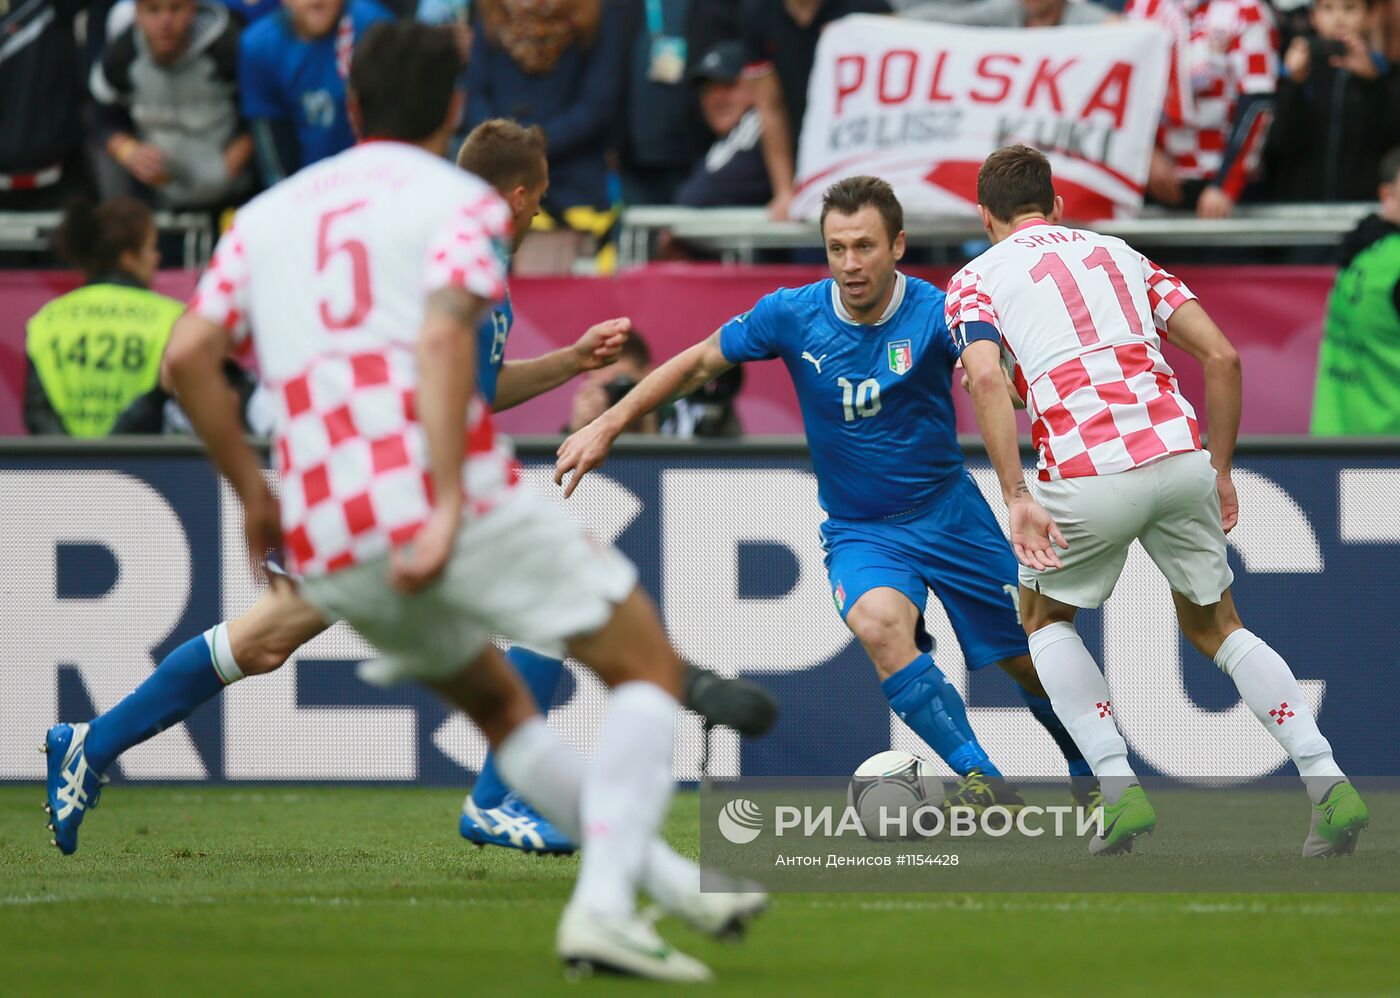 Футбол. ЕВРО - 2012. Матч сборных Италии и Хорватии